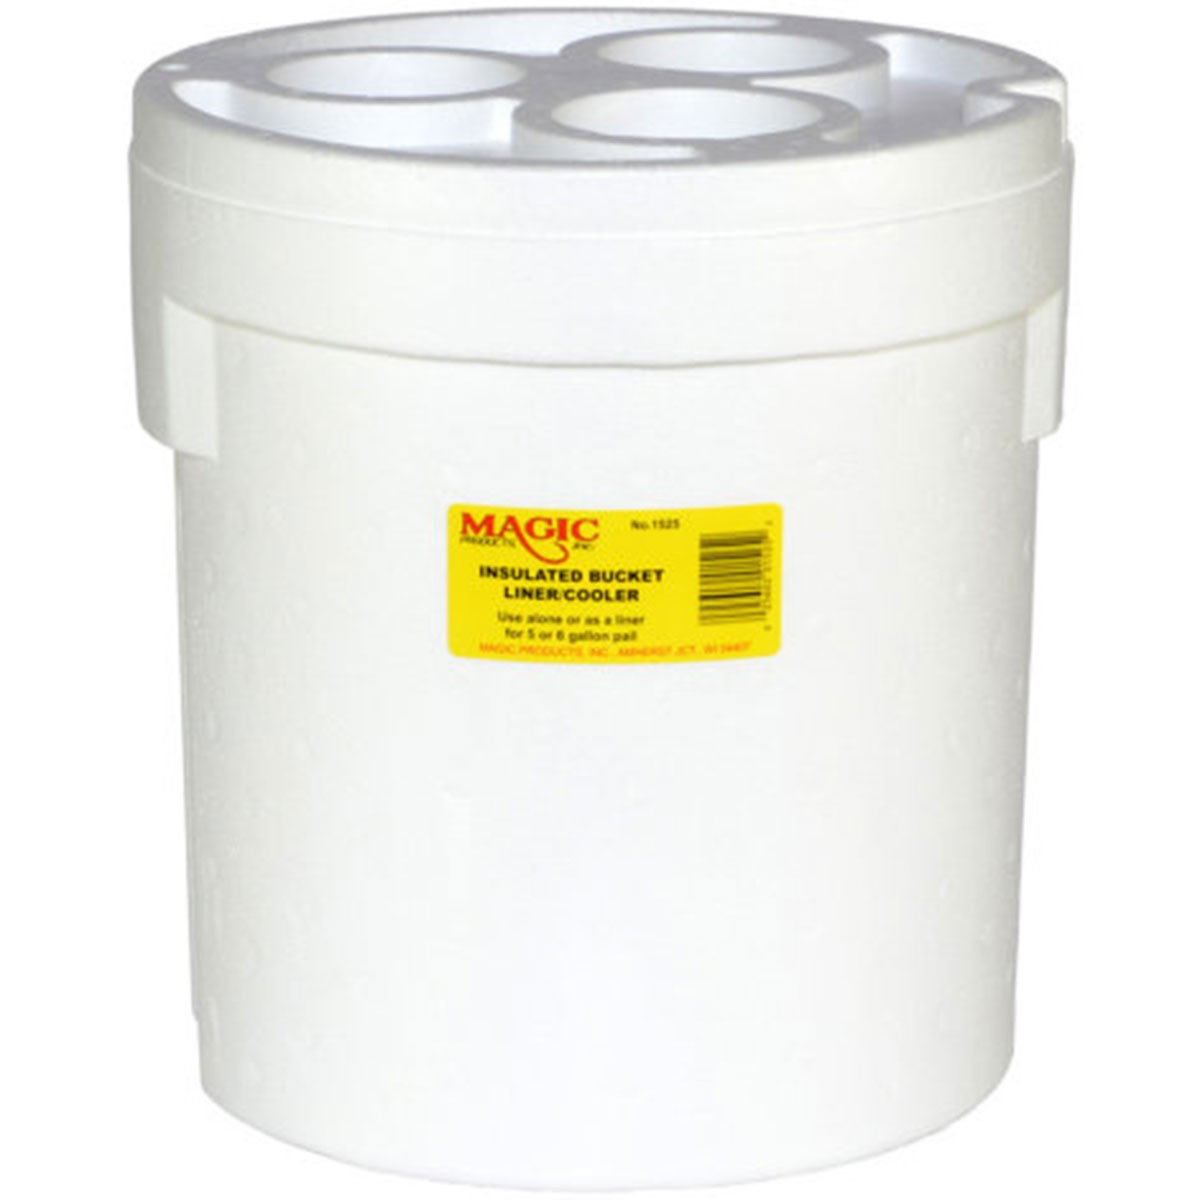 Magic Bait 10-Quart Insulated Bucket Liner/Cooler